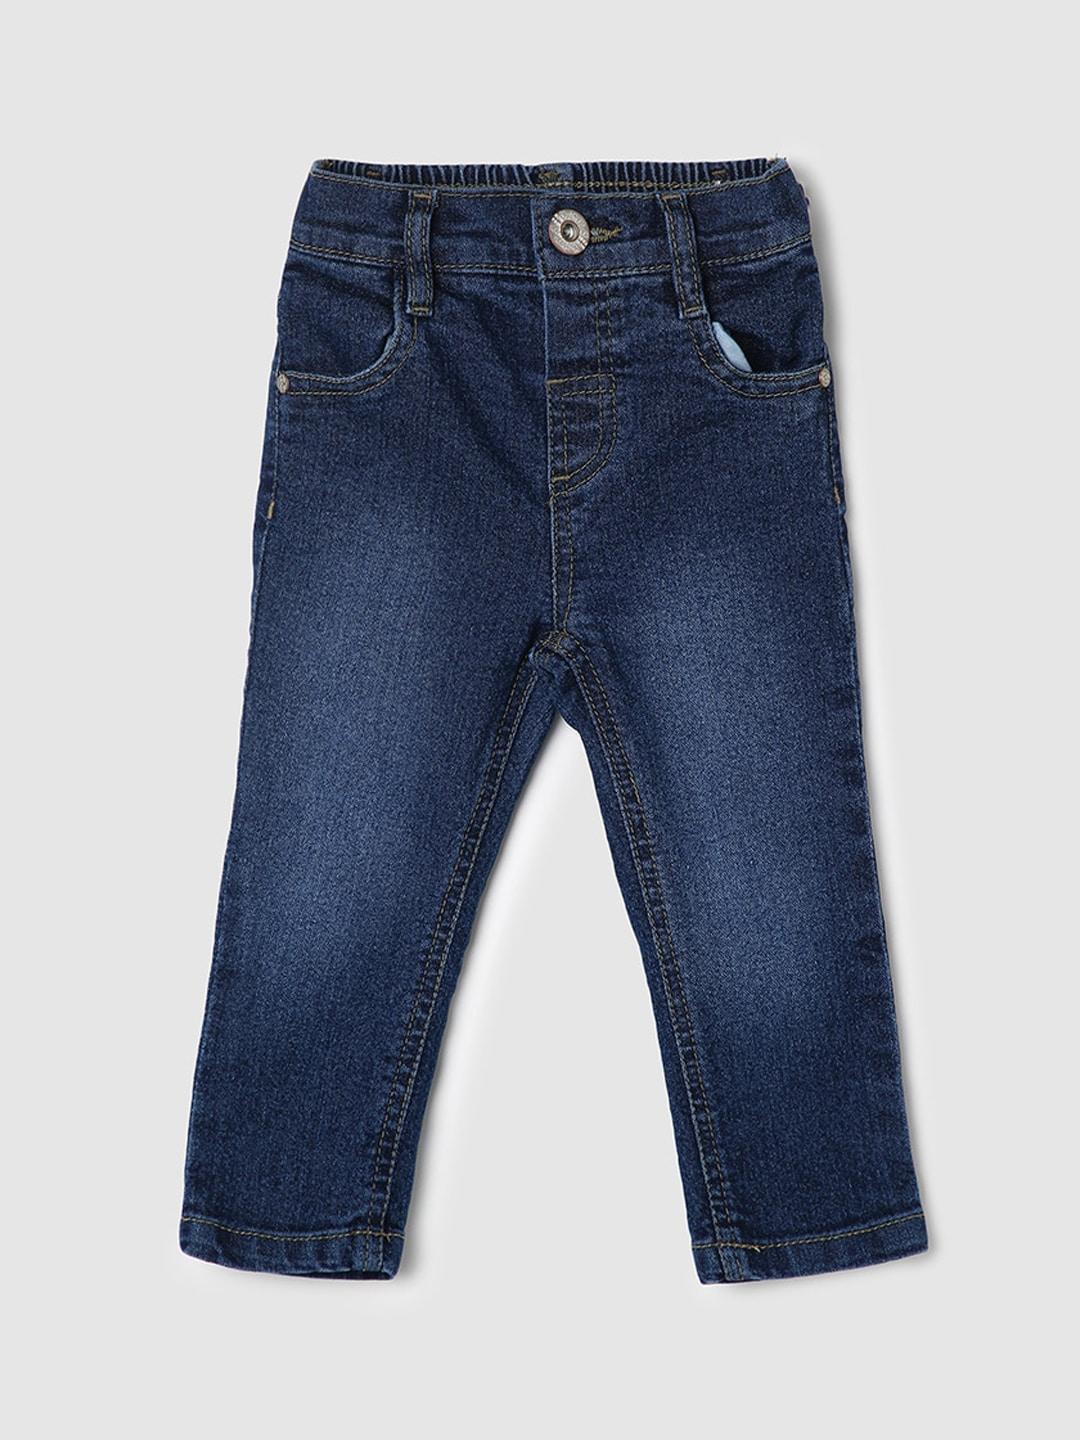 max-boys-light-fade-regular-fit-jeans